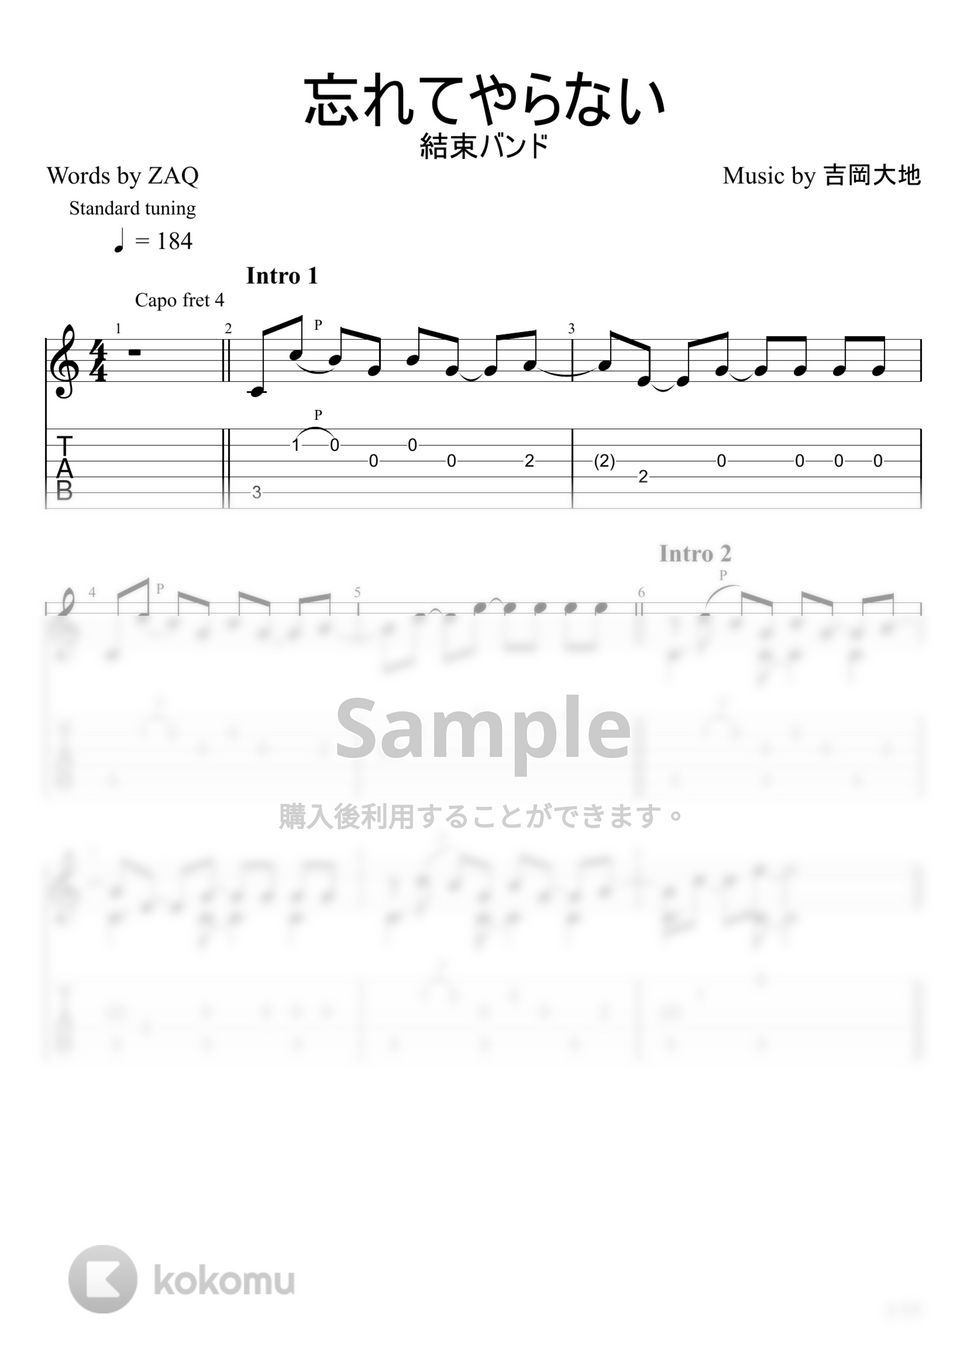 結束バンド - 忘れてやらない (ソロギター) by u3danchou